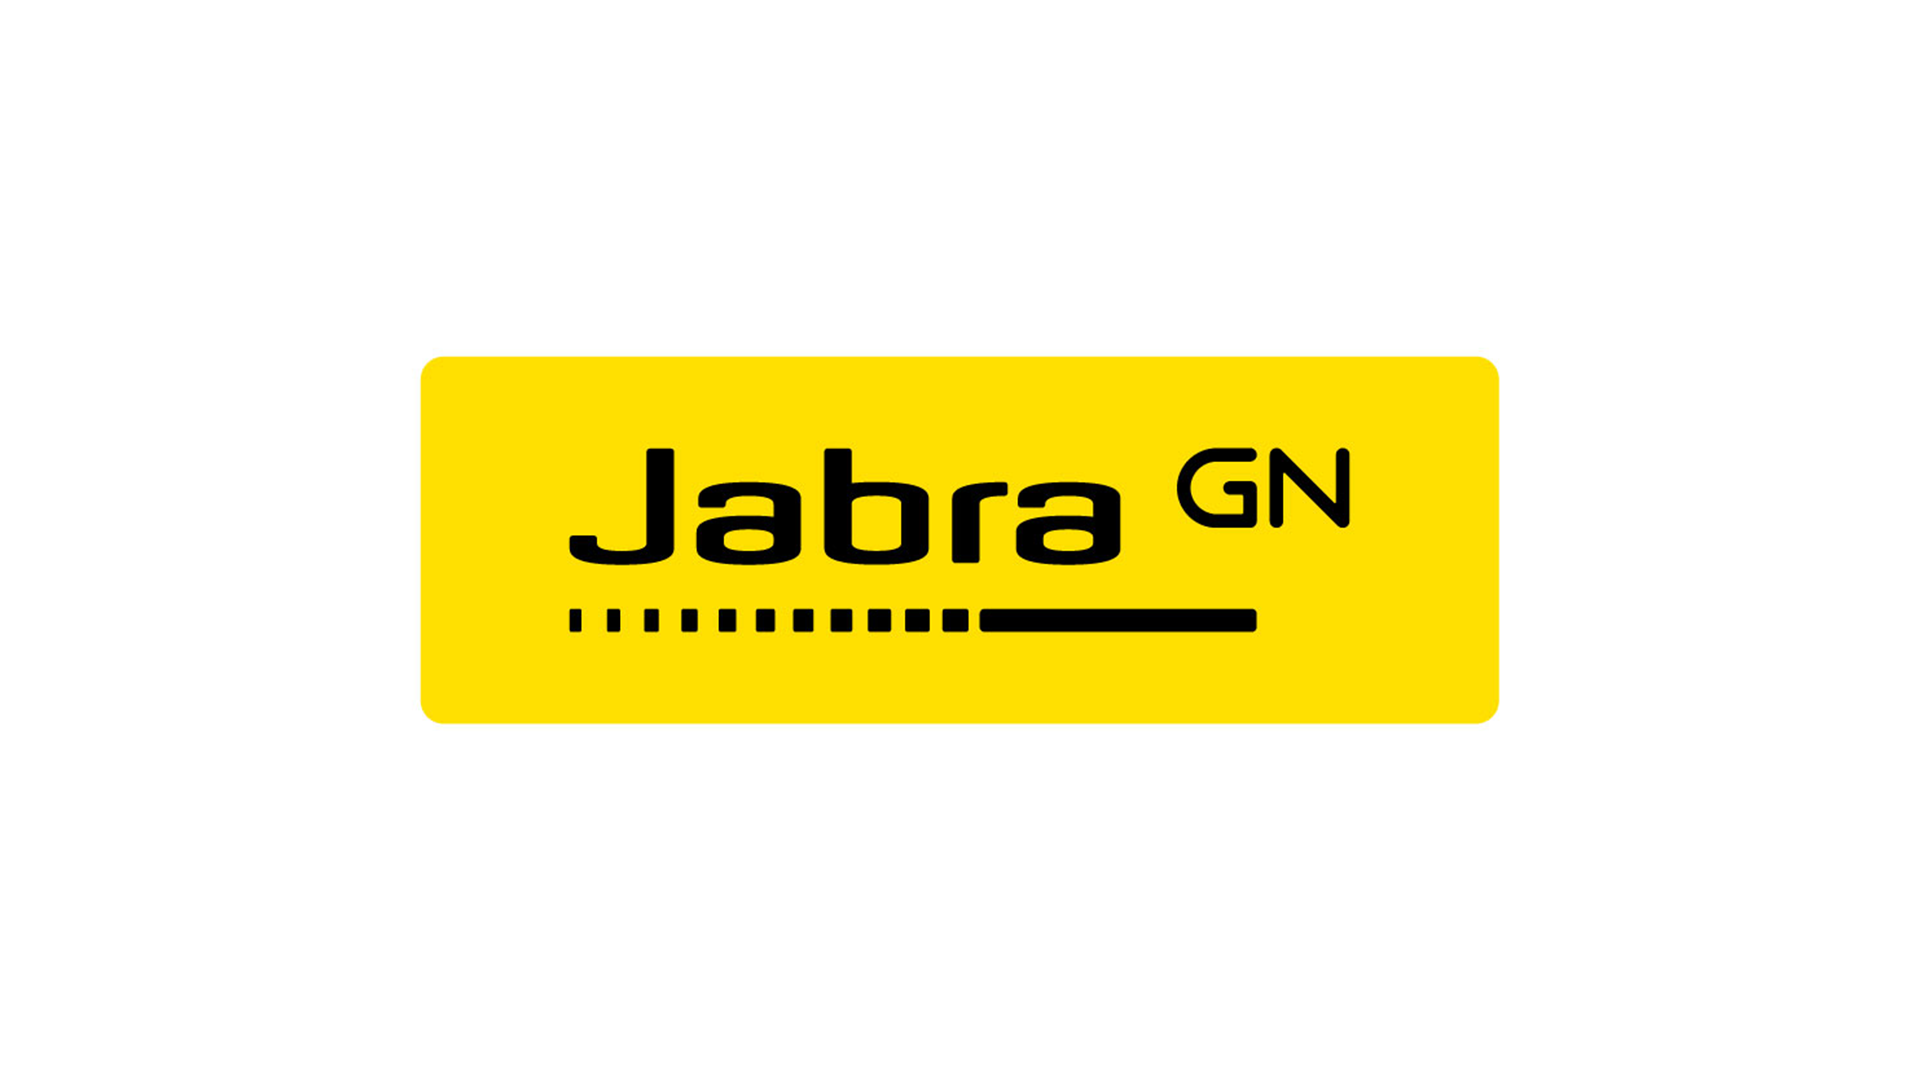 jabra panacast series has grown